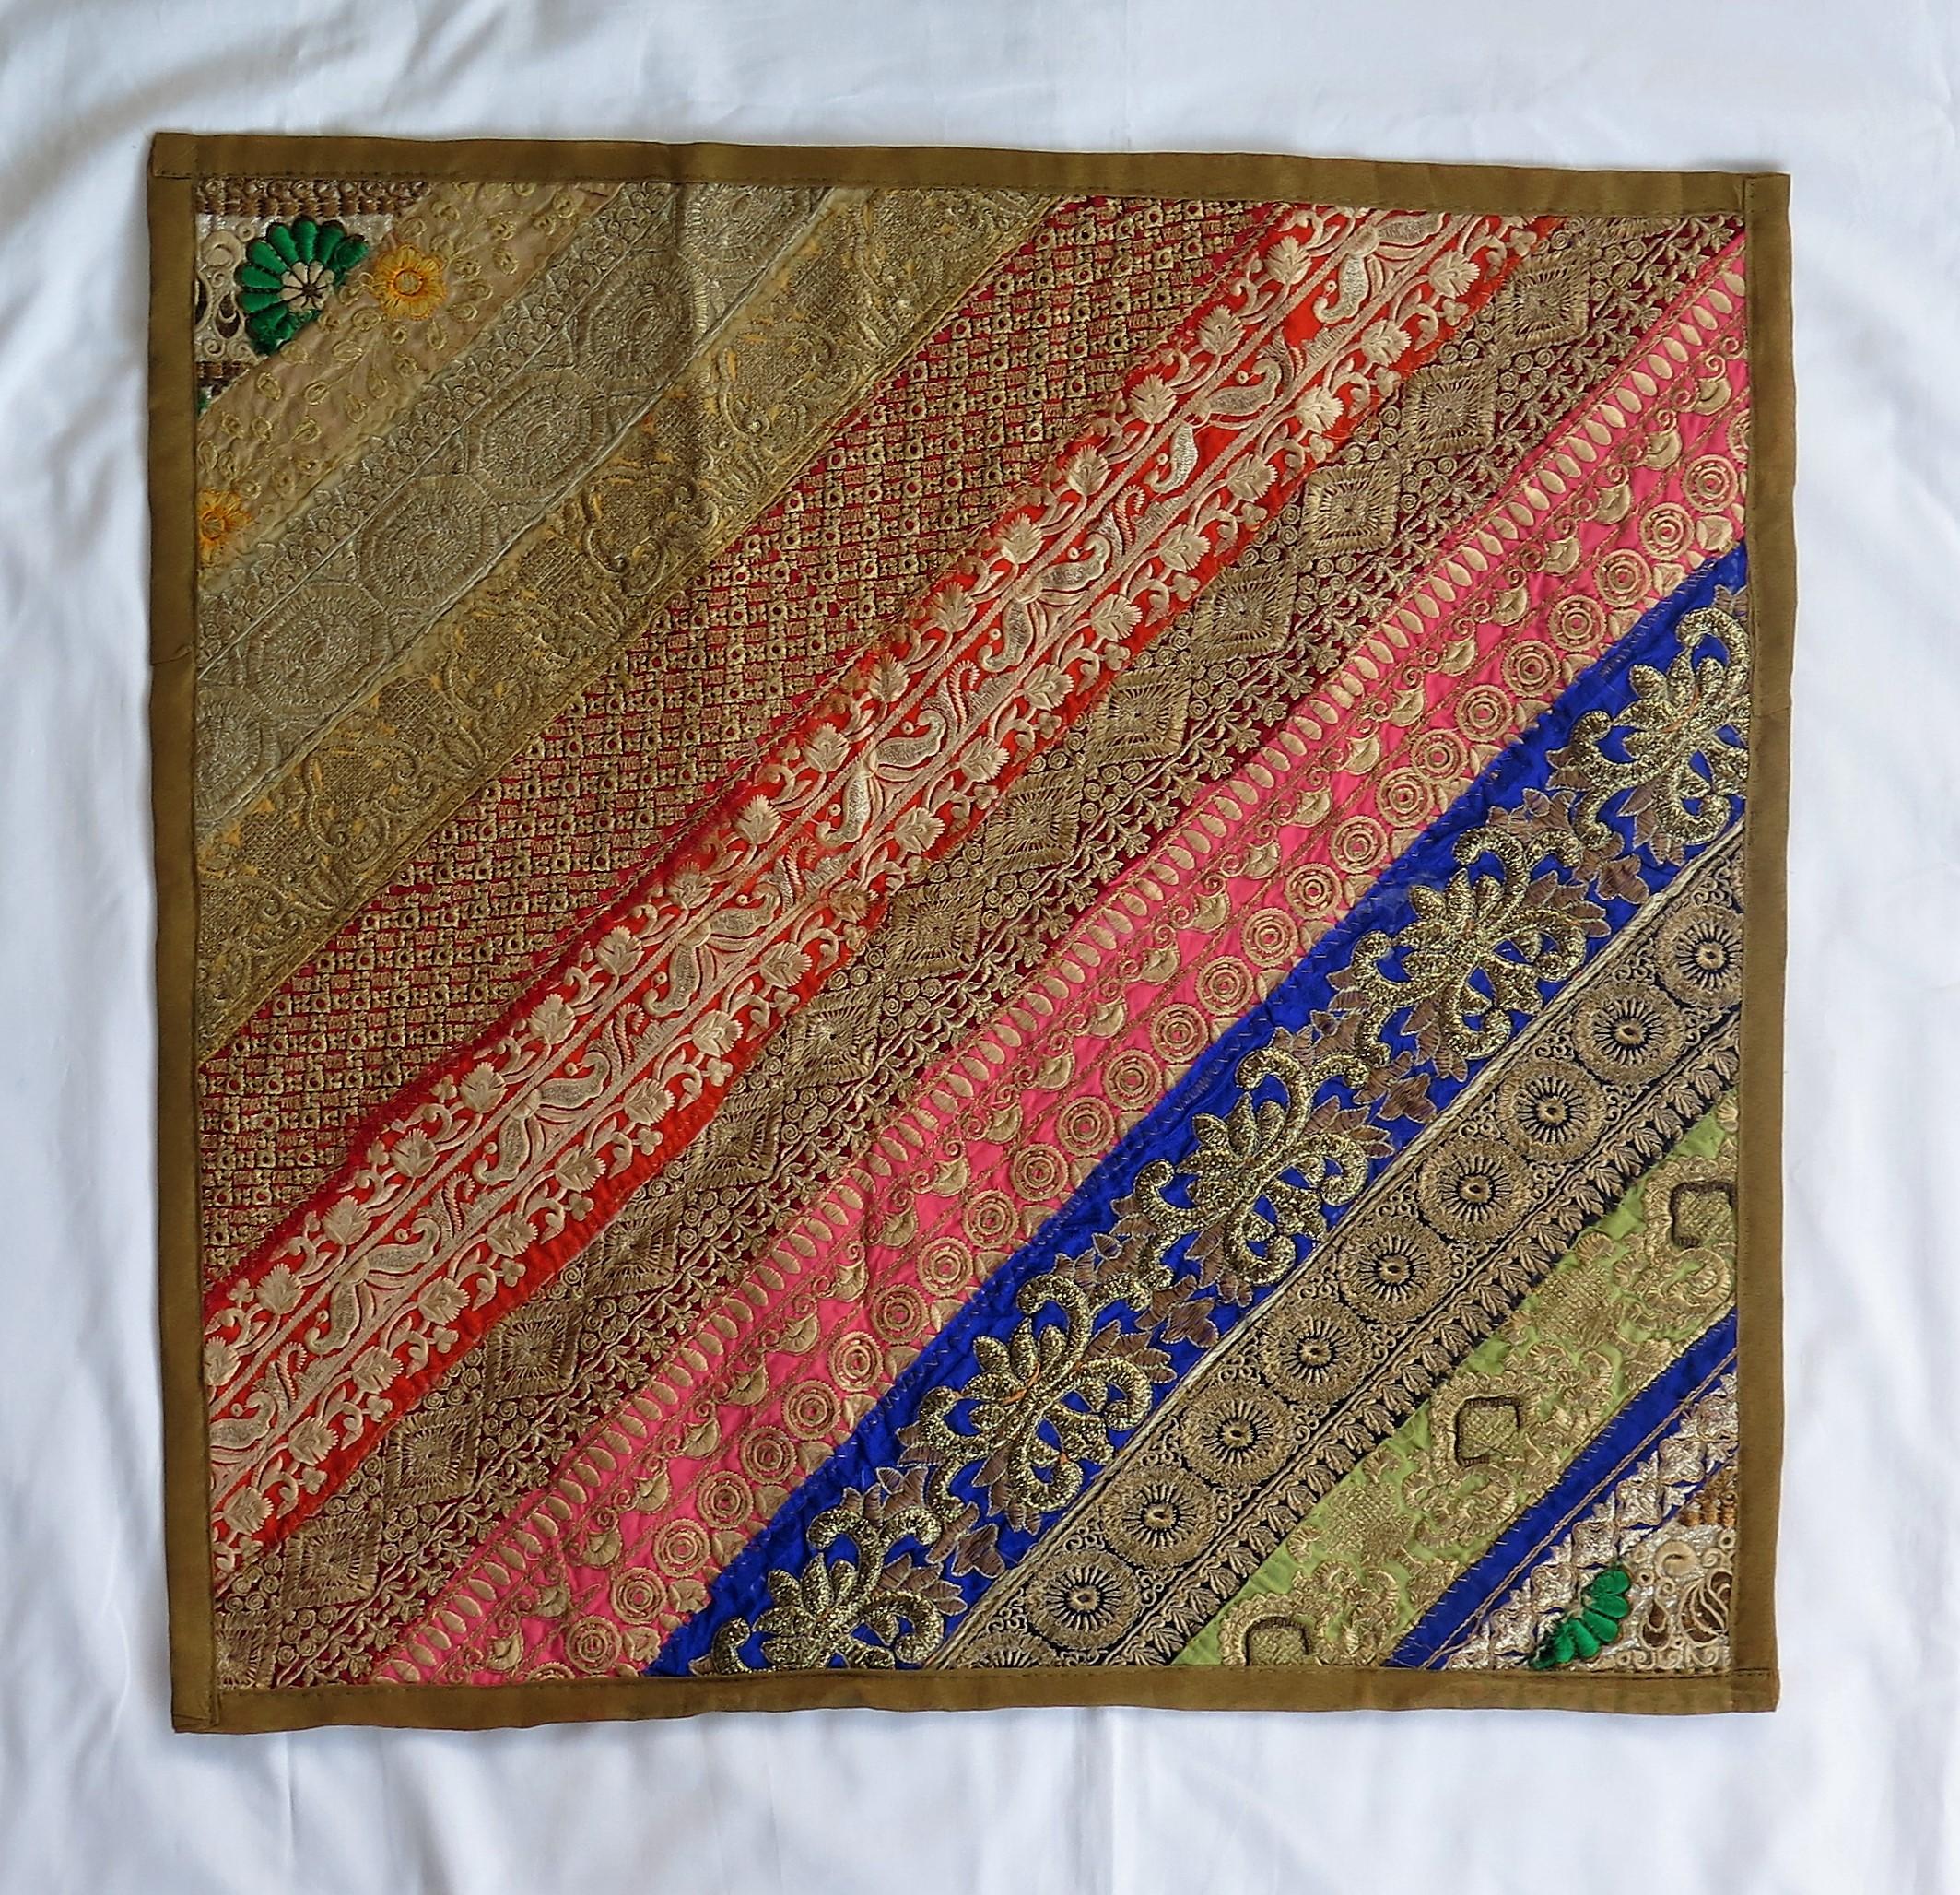 Il s'agit d'un grand coussin ou d'une housse de coussin (ou d'une tenture murale) aux couleurs éblouissantes, entièrement travaillé à la main à partir de bandes de tissu de saris anciens et d'autres revêtements, selon la méthode traditionnelle de